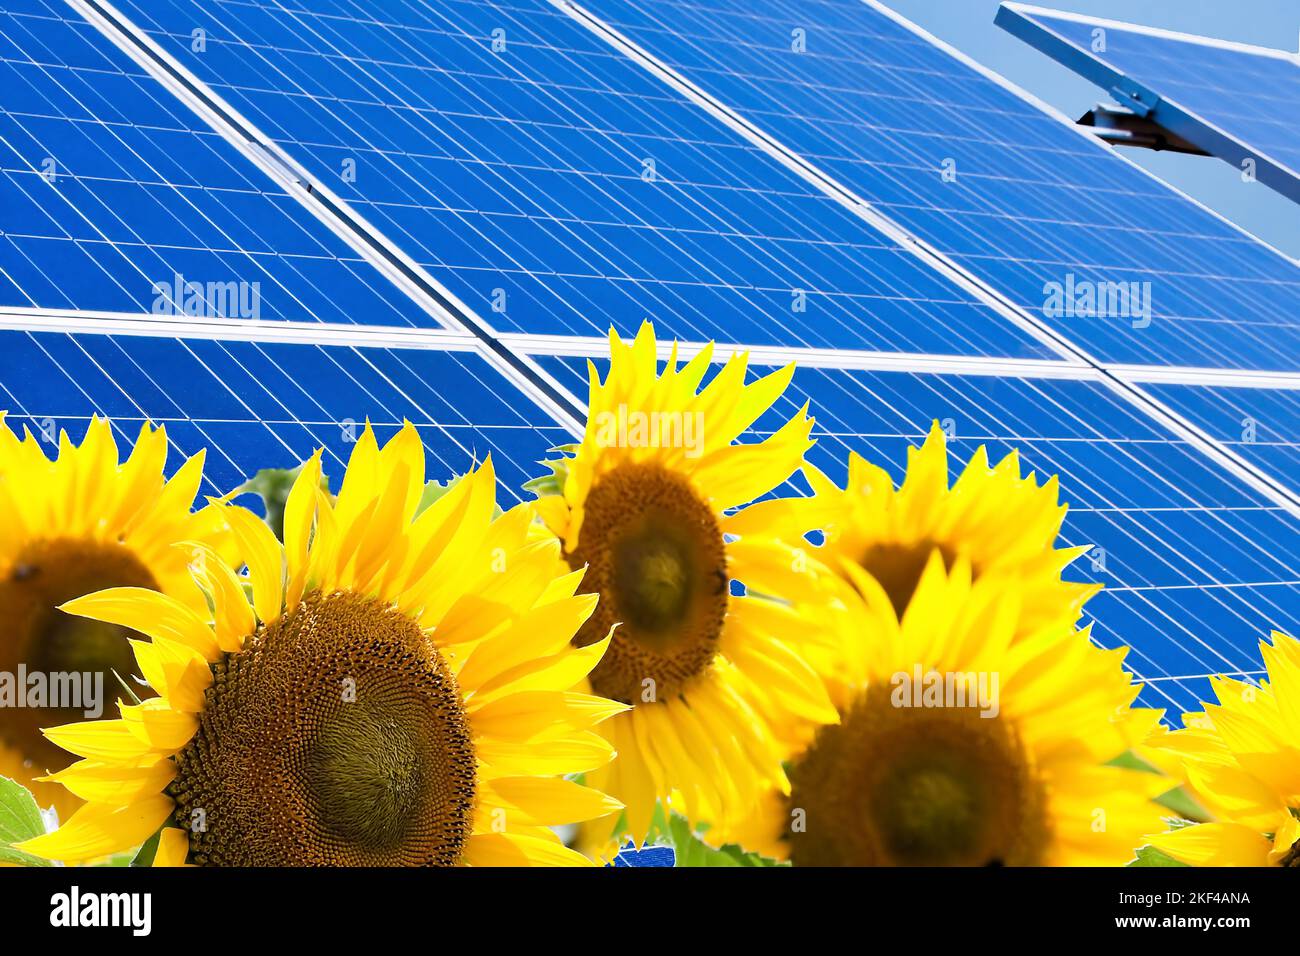 Regenerative, alternative Solarenergie. Sonnenenergie, Kraftwerk, Solaranlage, Photovoltaik, Umweltfreundlich, Stock Photo